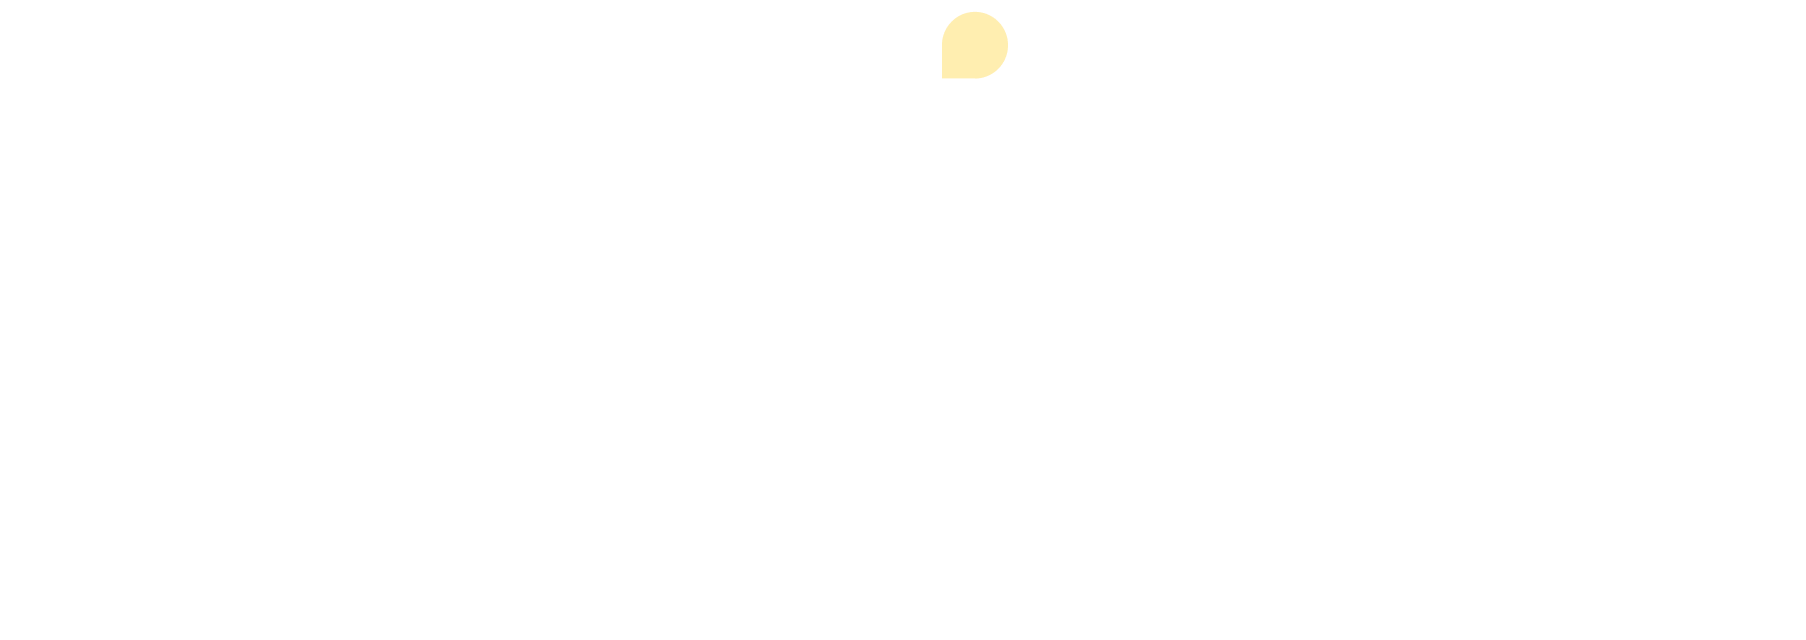 cx-circle-white-2022